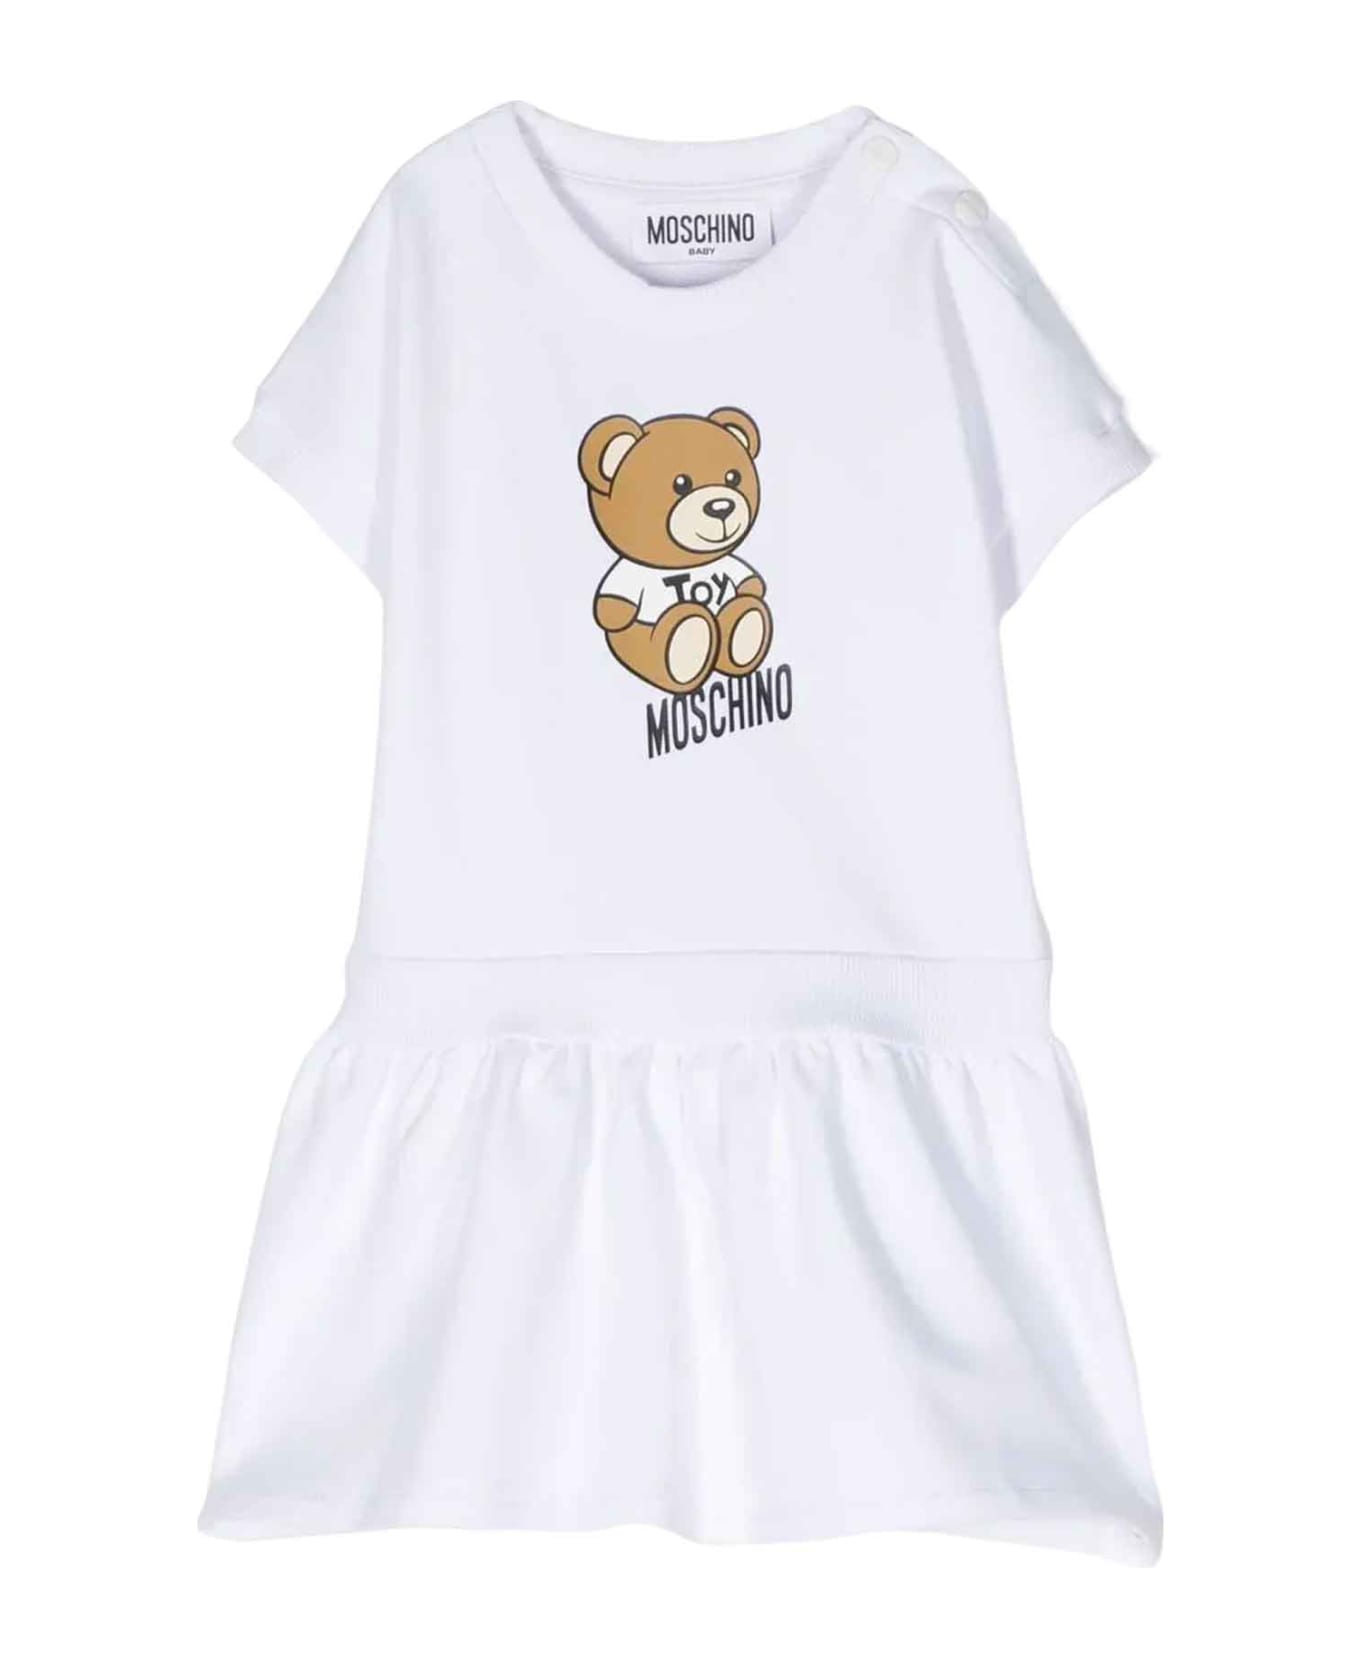 Moschino White Dress Baby Girl - Bianco